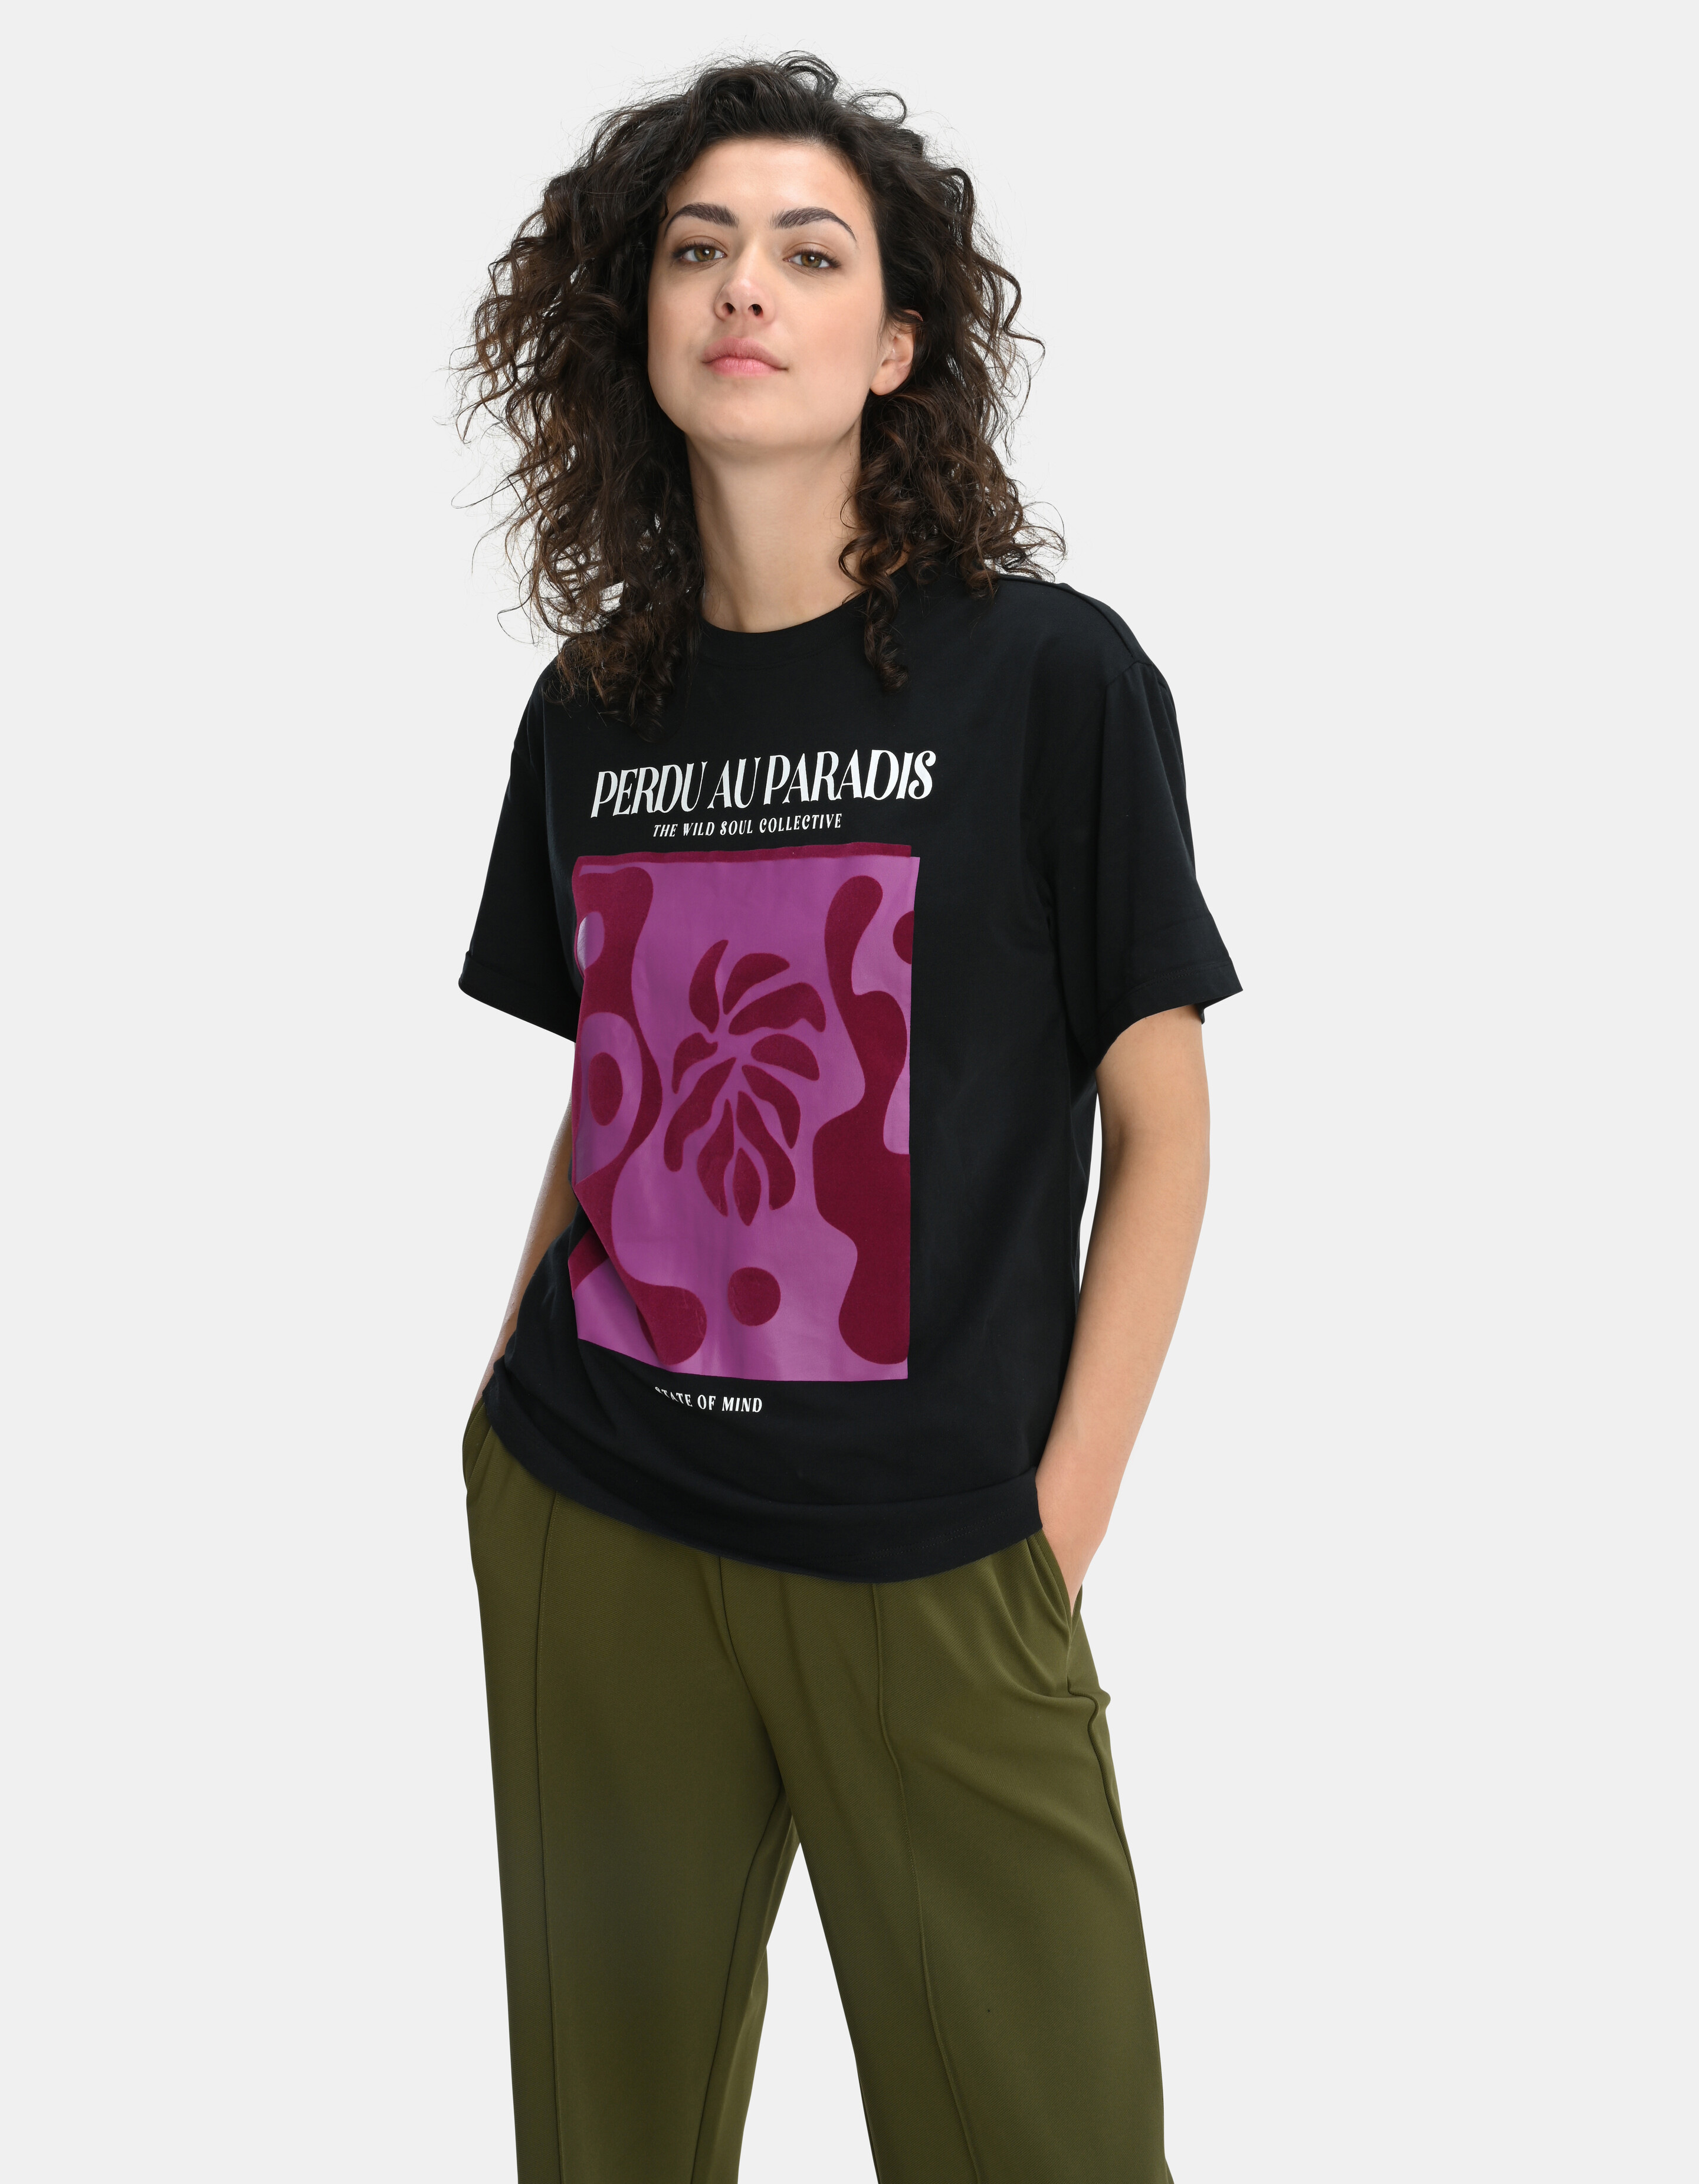 T-Shirt mit grafischem Aufdruck Schwarz SHOEBY WOMEN